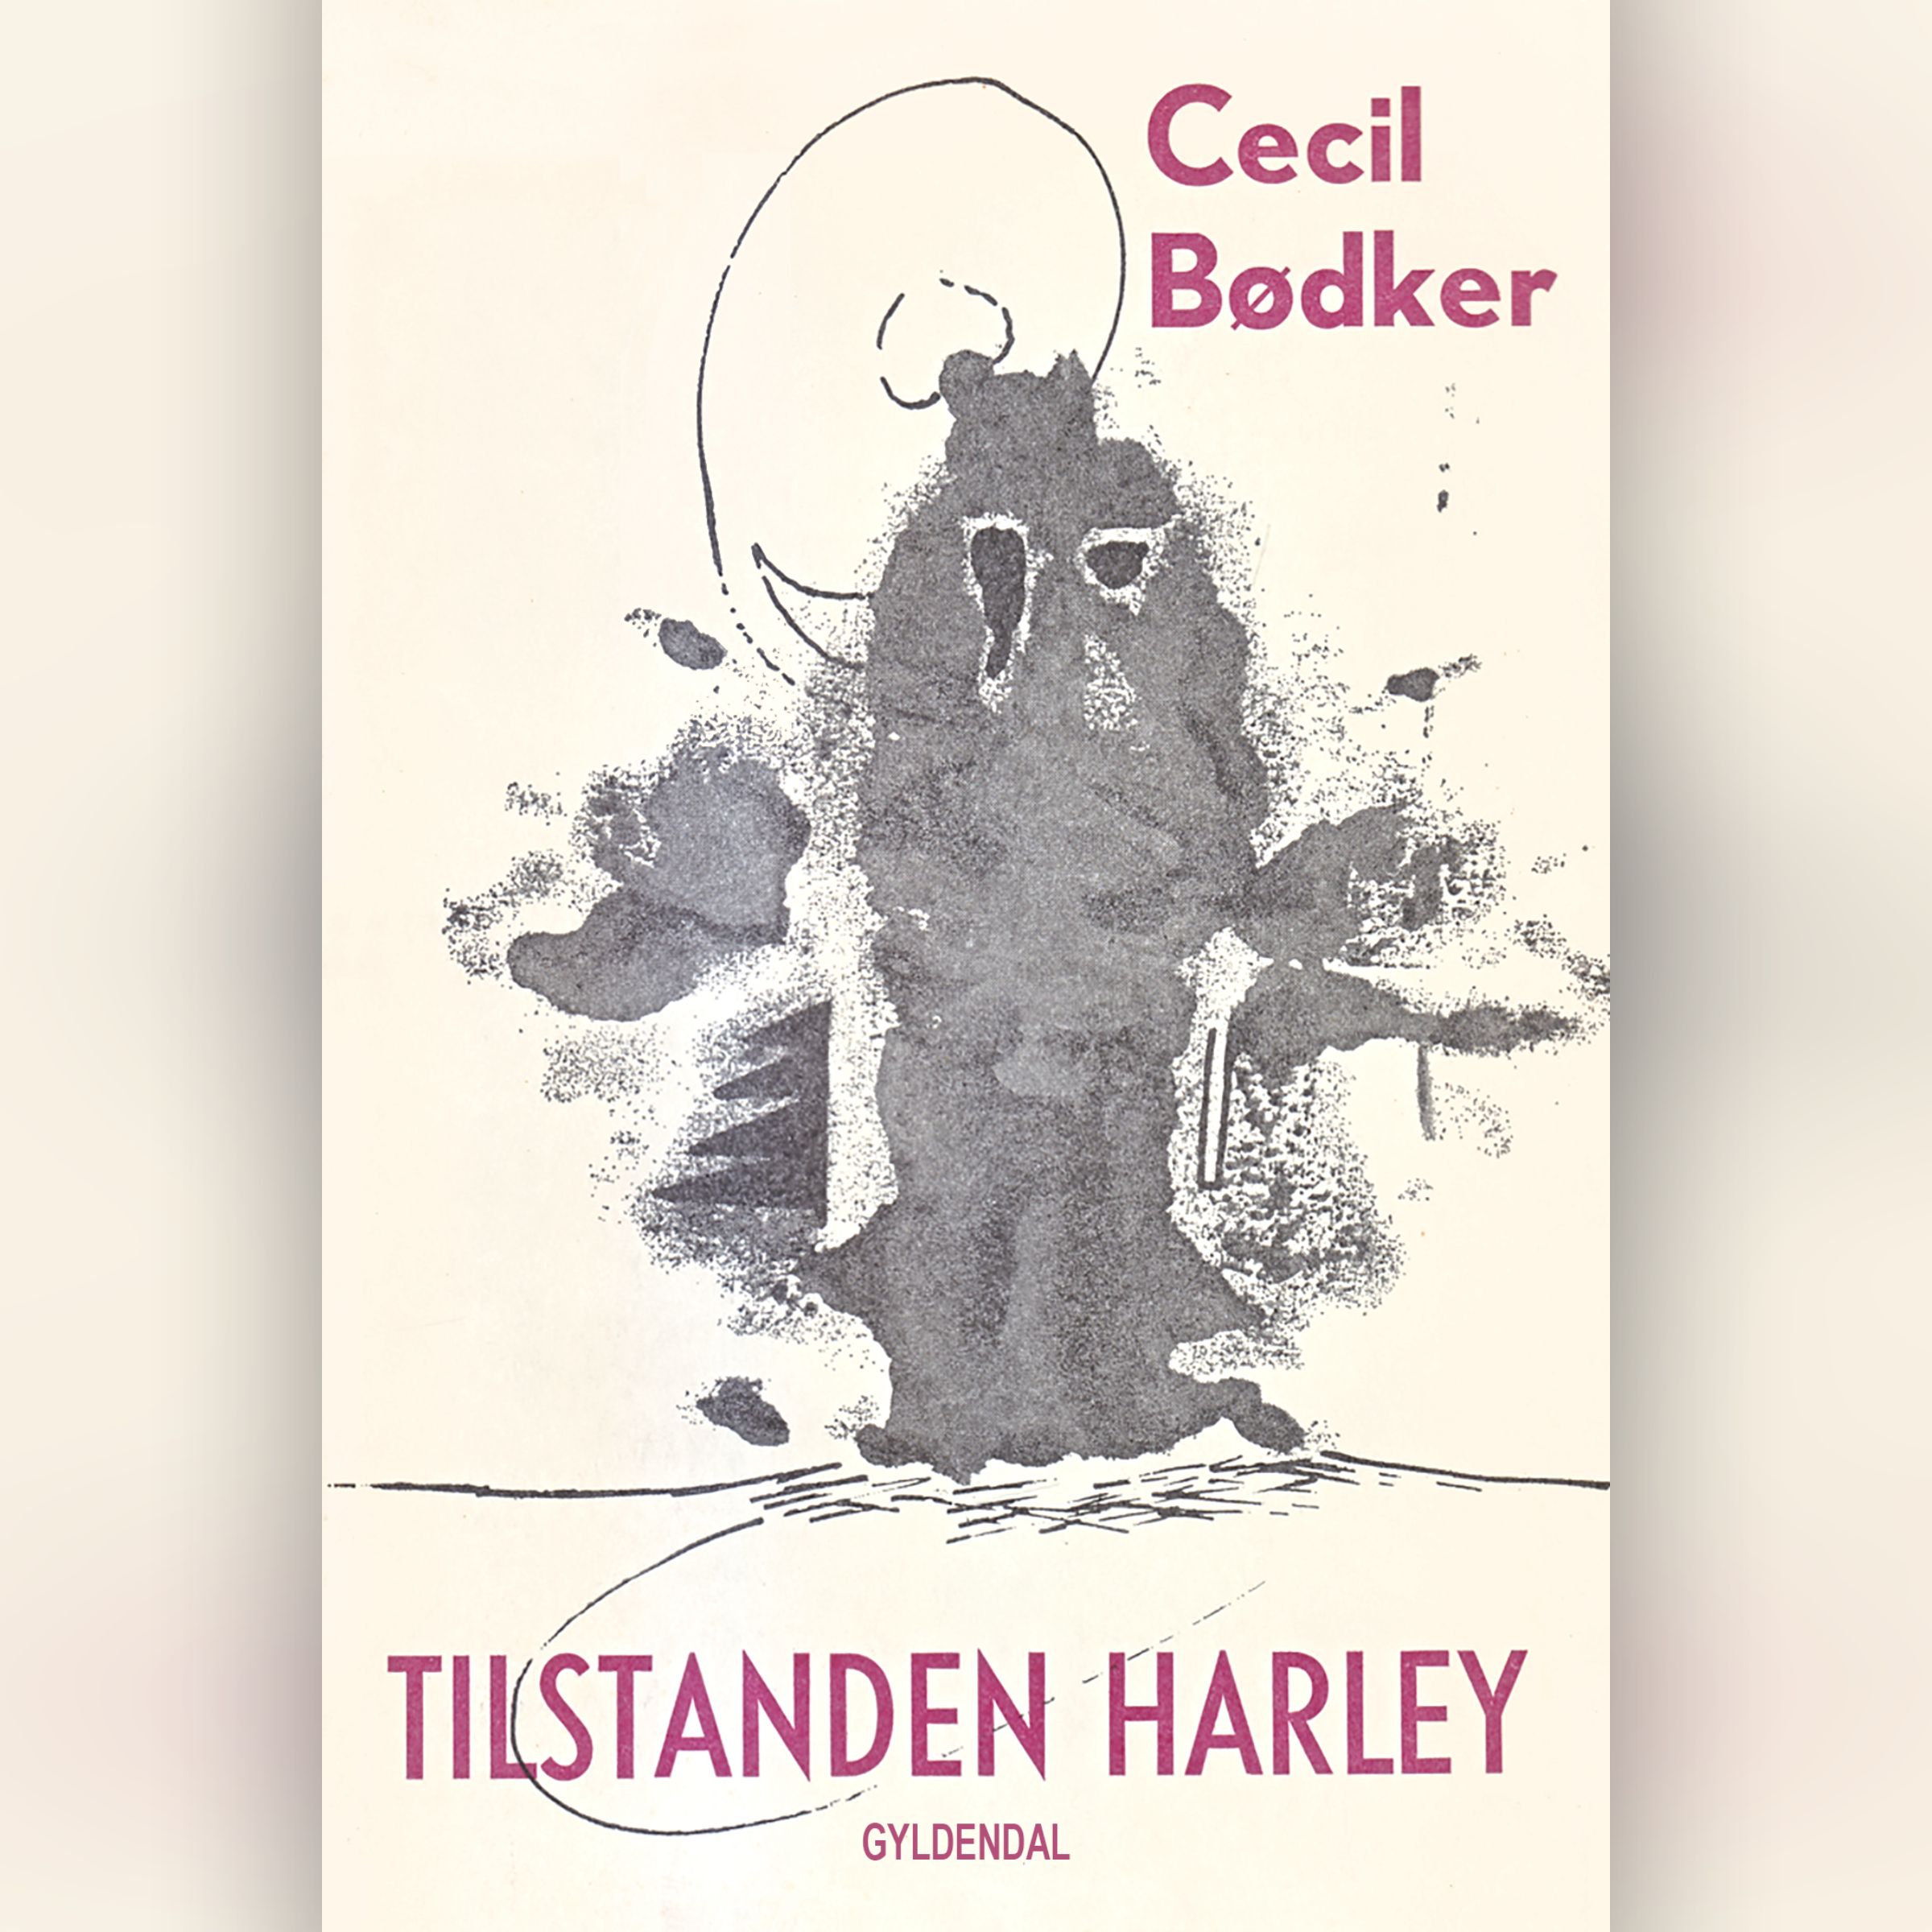 Tilstanden Harley, ljudbok av Cecil Bødker